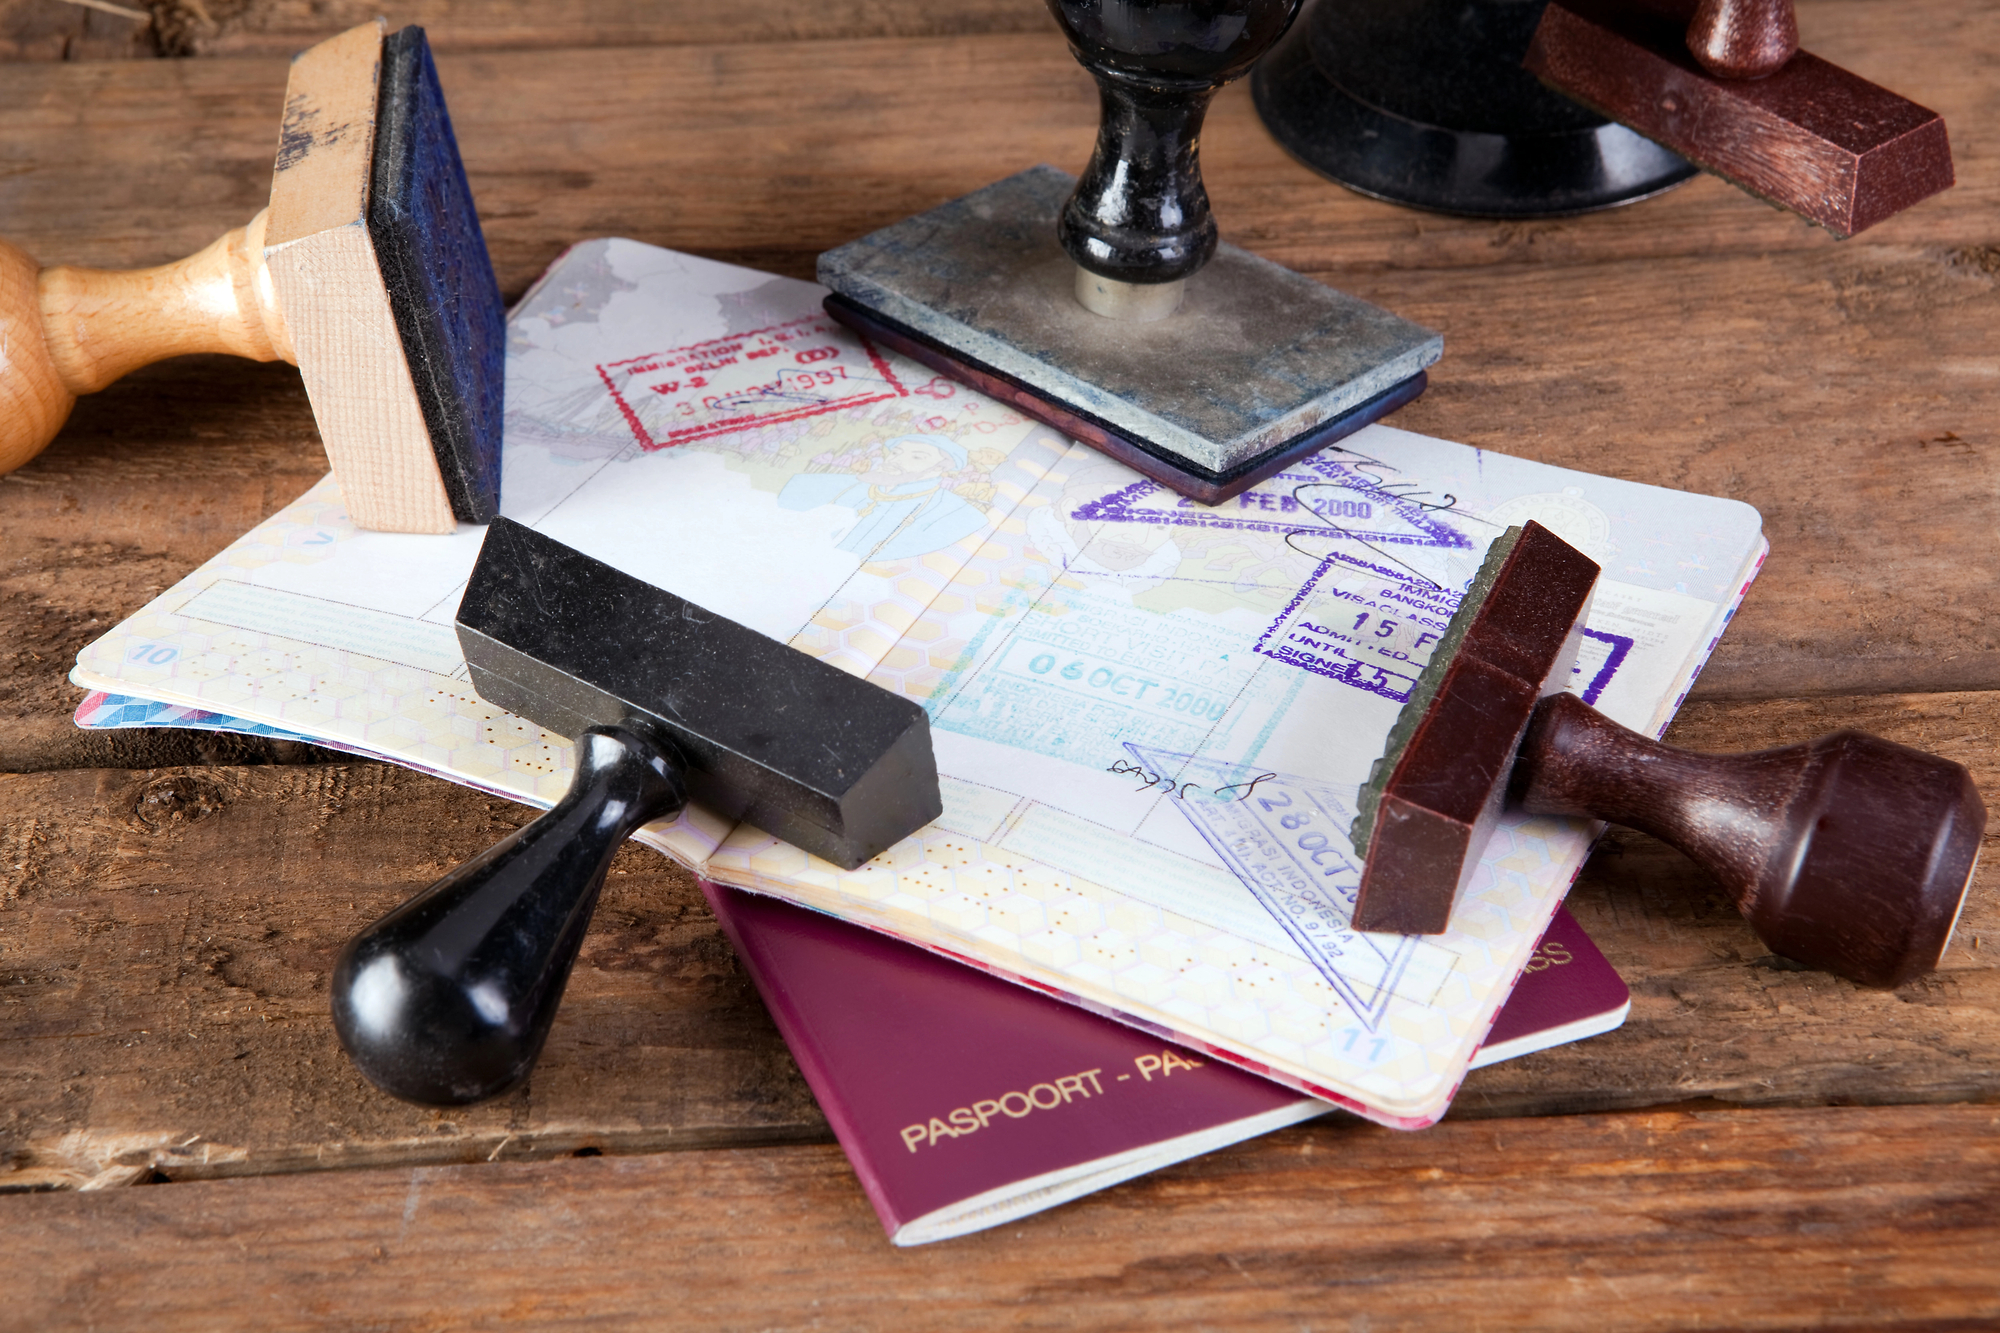 Post precedente: Da luglio sarà possibile richiedere il passaporto negli uffici postali